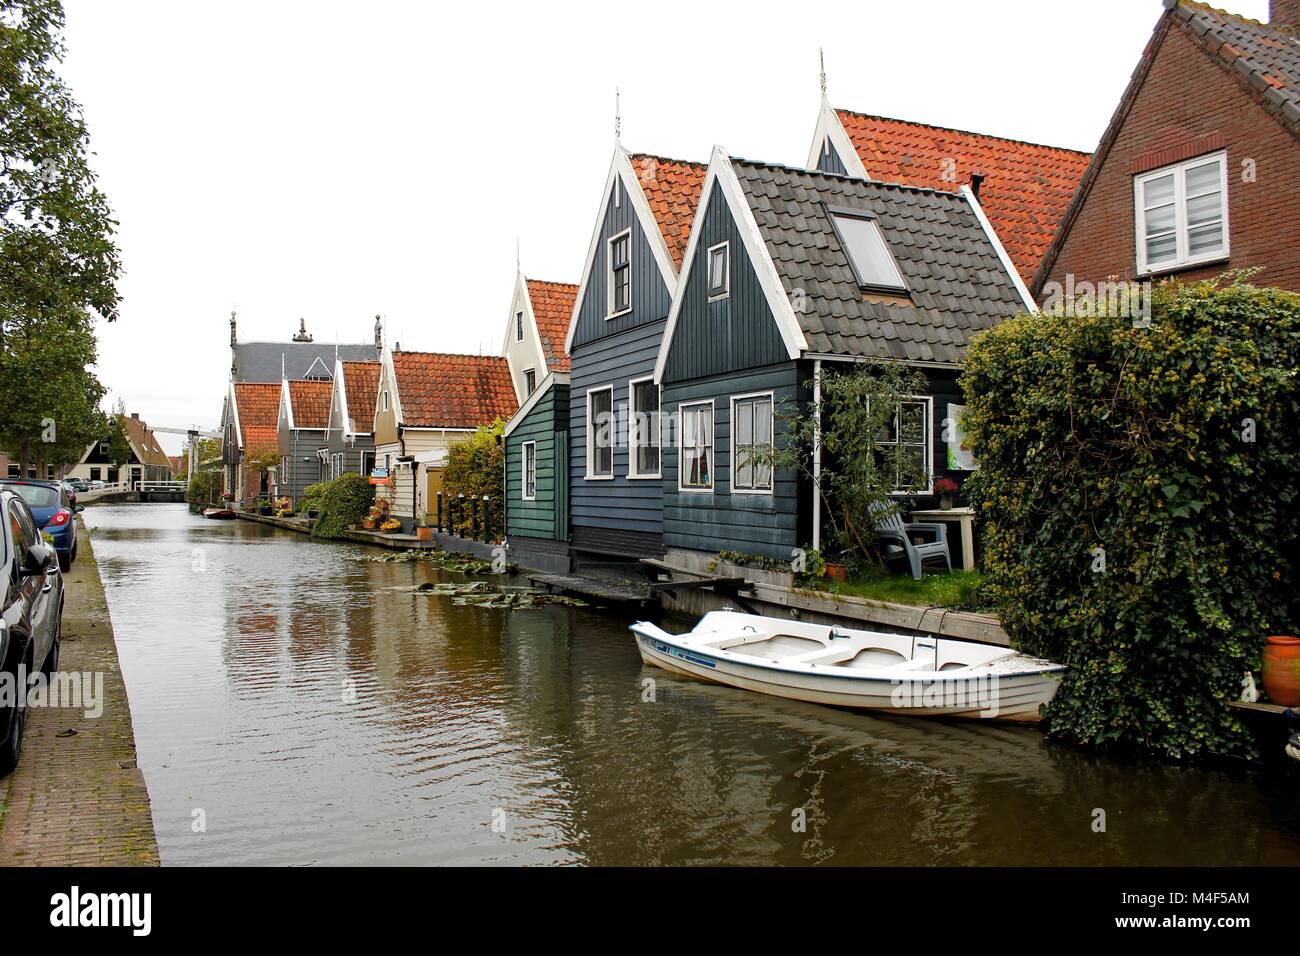 Dutch bleu traditionnel canal ligne maisons avec réflexion sur l'eau - Alkmaar, Pays-Bas Banque D'Images